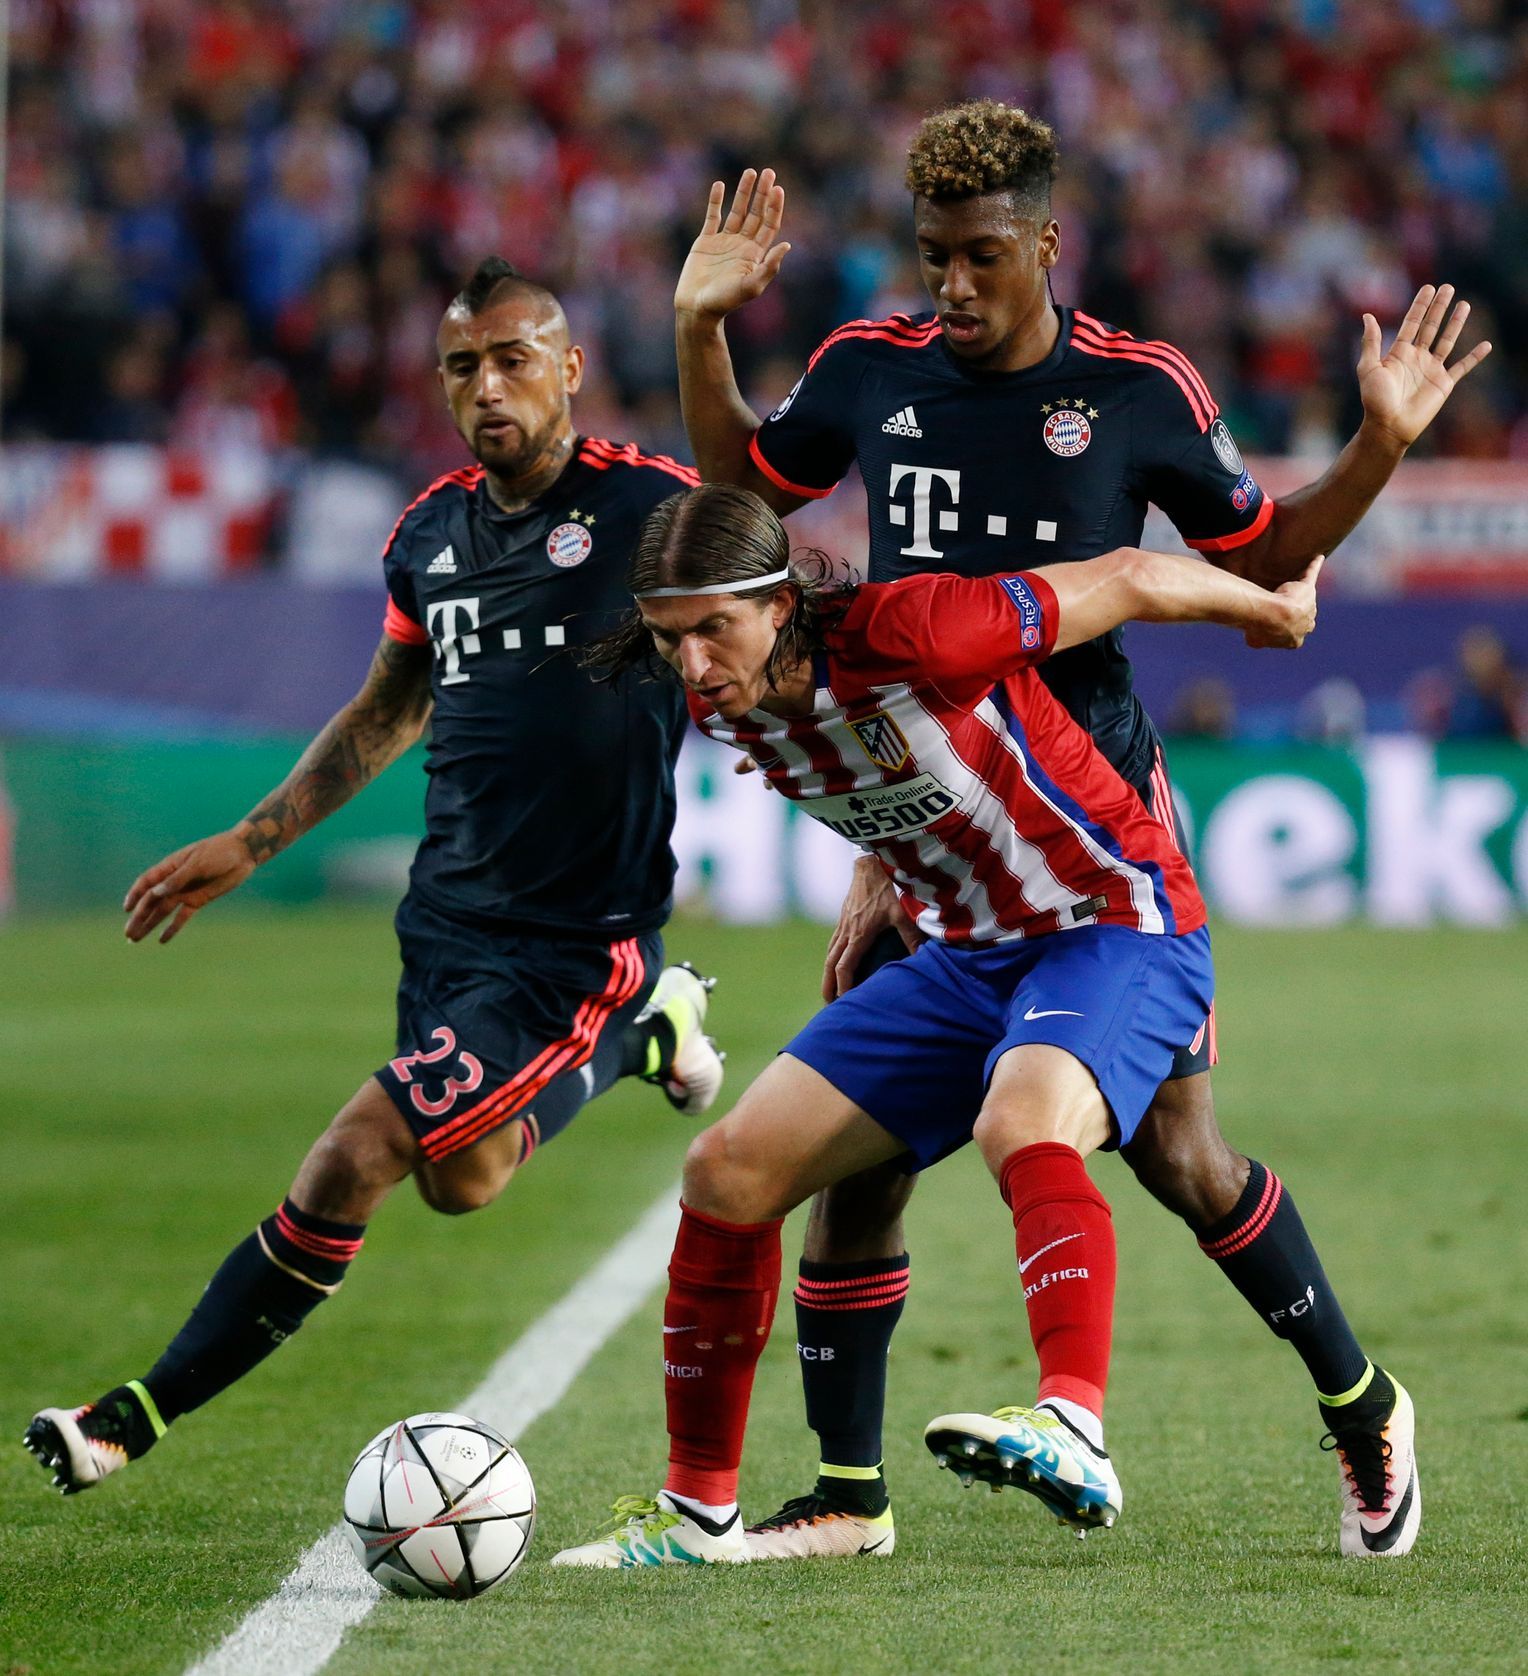 Živě: Bayern - Atlético 2:1, Madrid urputnou obranou zabránil třetí brance a postupuje do finále - Aktuálně.cz